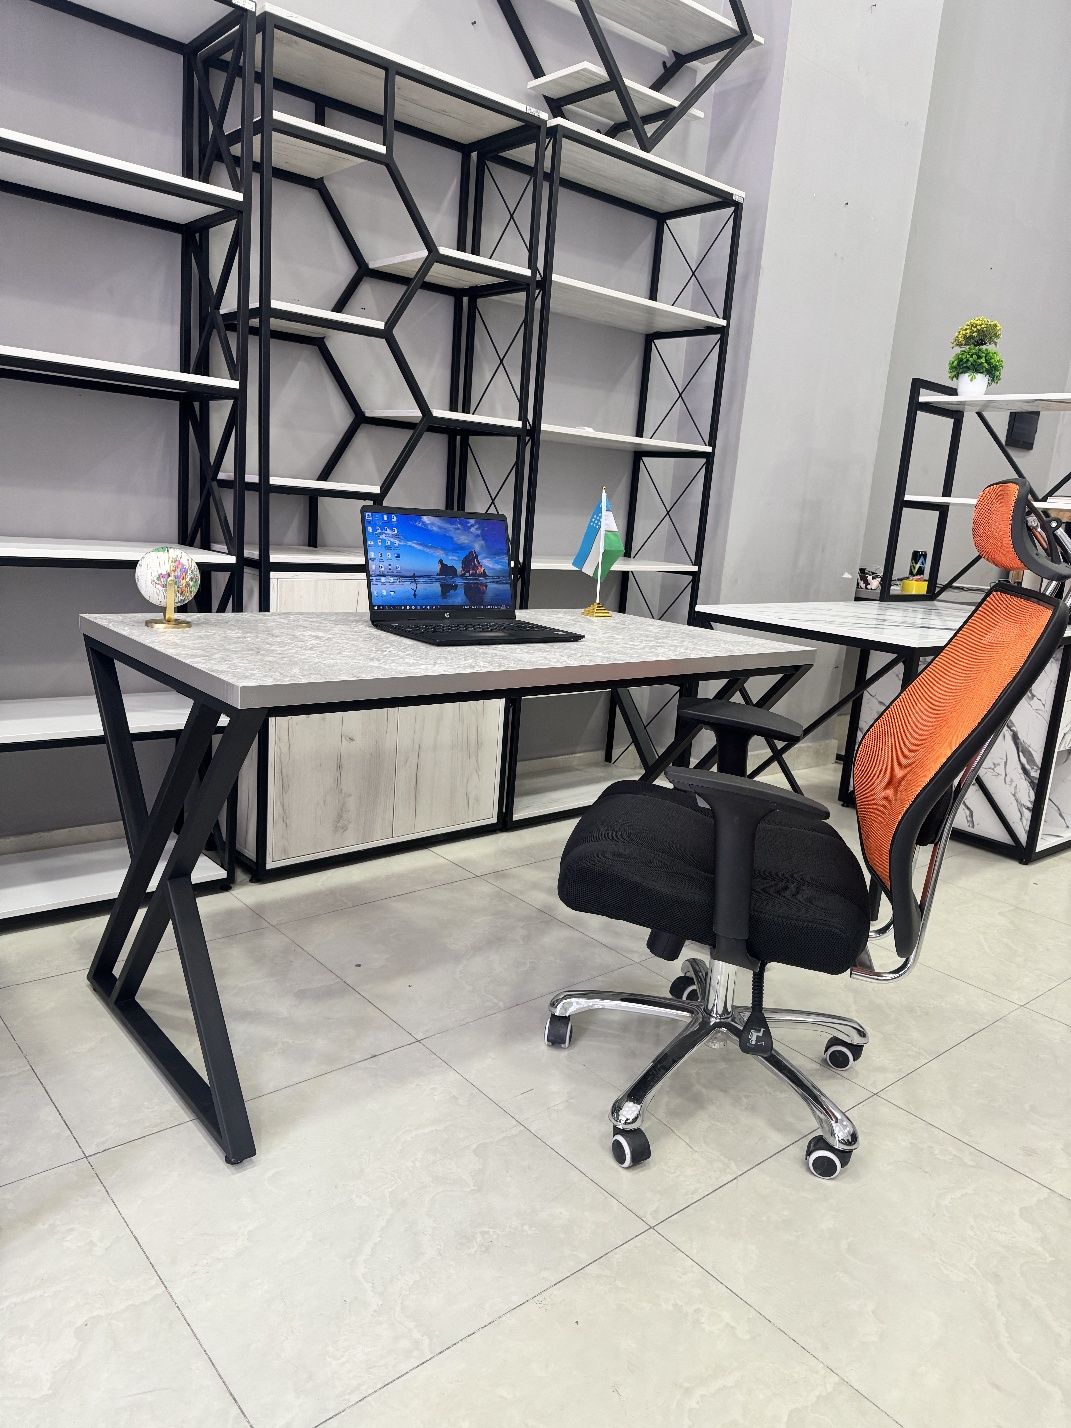 Стол|Кресло|Стул|Стеллаж|Шкаф|Ofis stol|Tumba|Javon|Kreslo|Stul|Loft